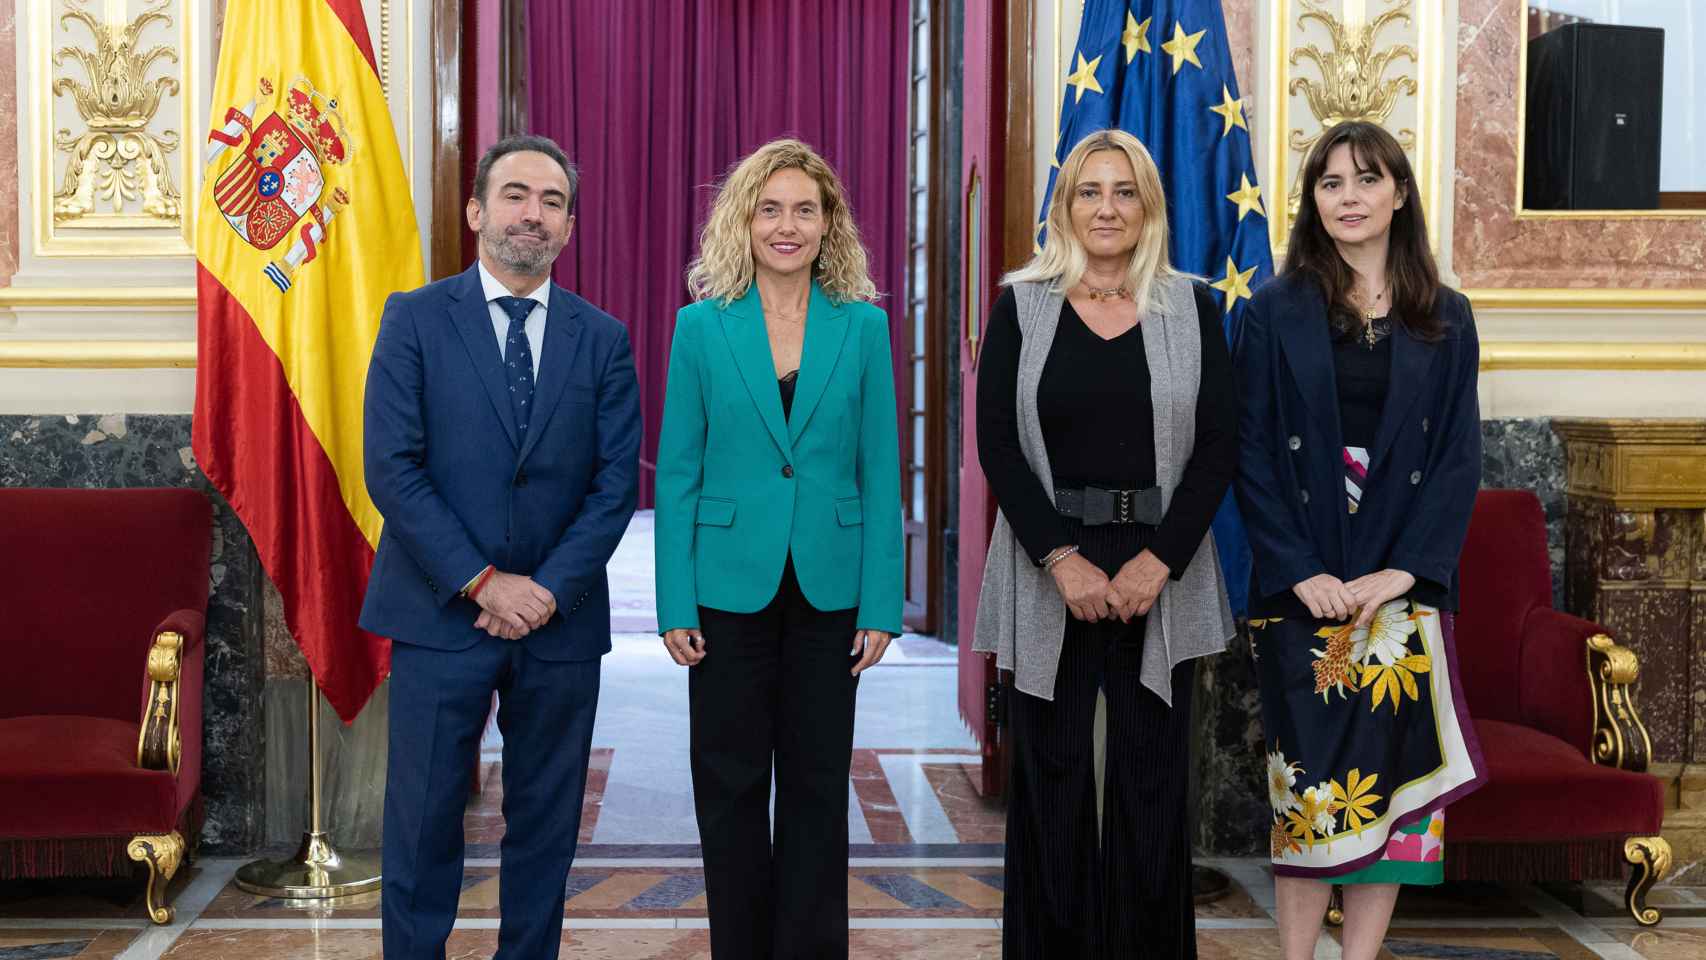 La presidenta del Congreso de los Diputados, Meritxell Batet, este martes junto a los diputados autonómicos y a la secretaria general de la Asamblea de Madrid.